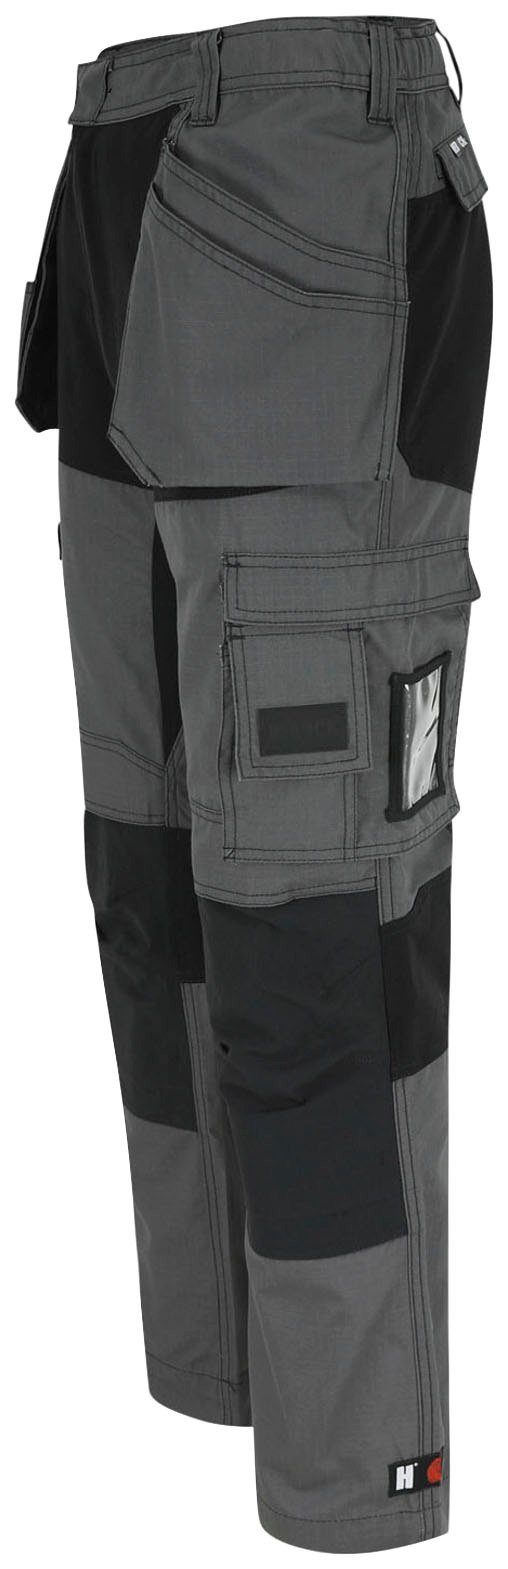 und 2 Arbeitshose mit grau-schwarz festen Hose Nageltaschen Spector Herock Multi-Pocket-Hose 4-Wege-Stretch-Teilen